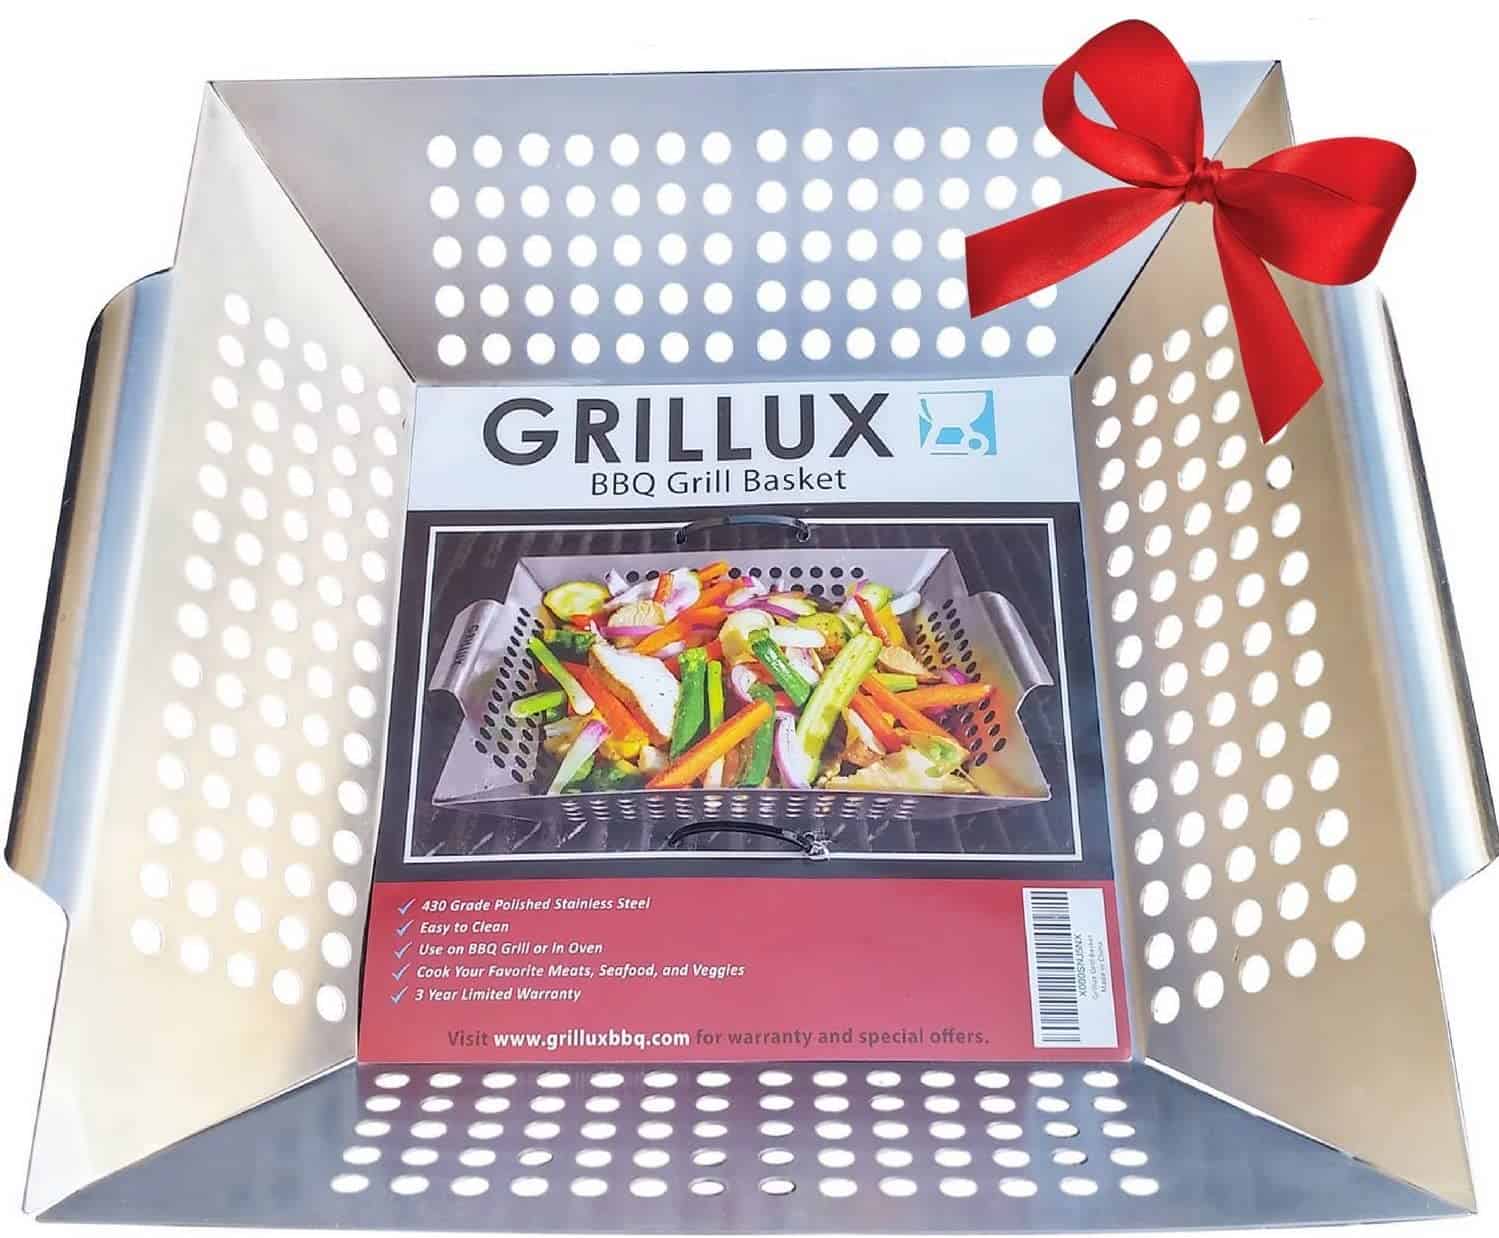 Best grill basket for fish & kabobs- Grillux Vegetable Grill Basket